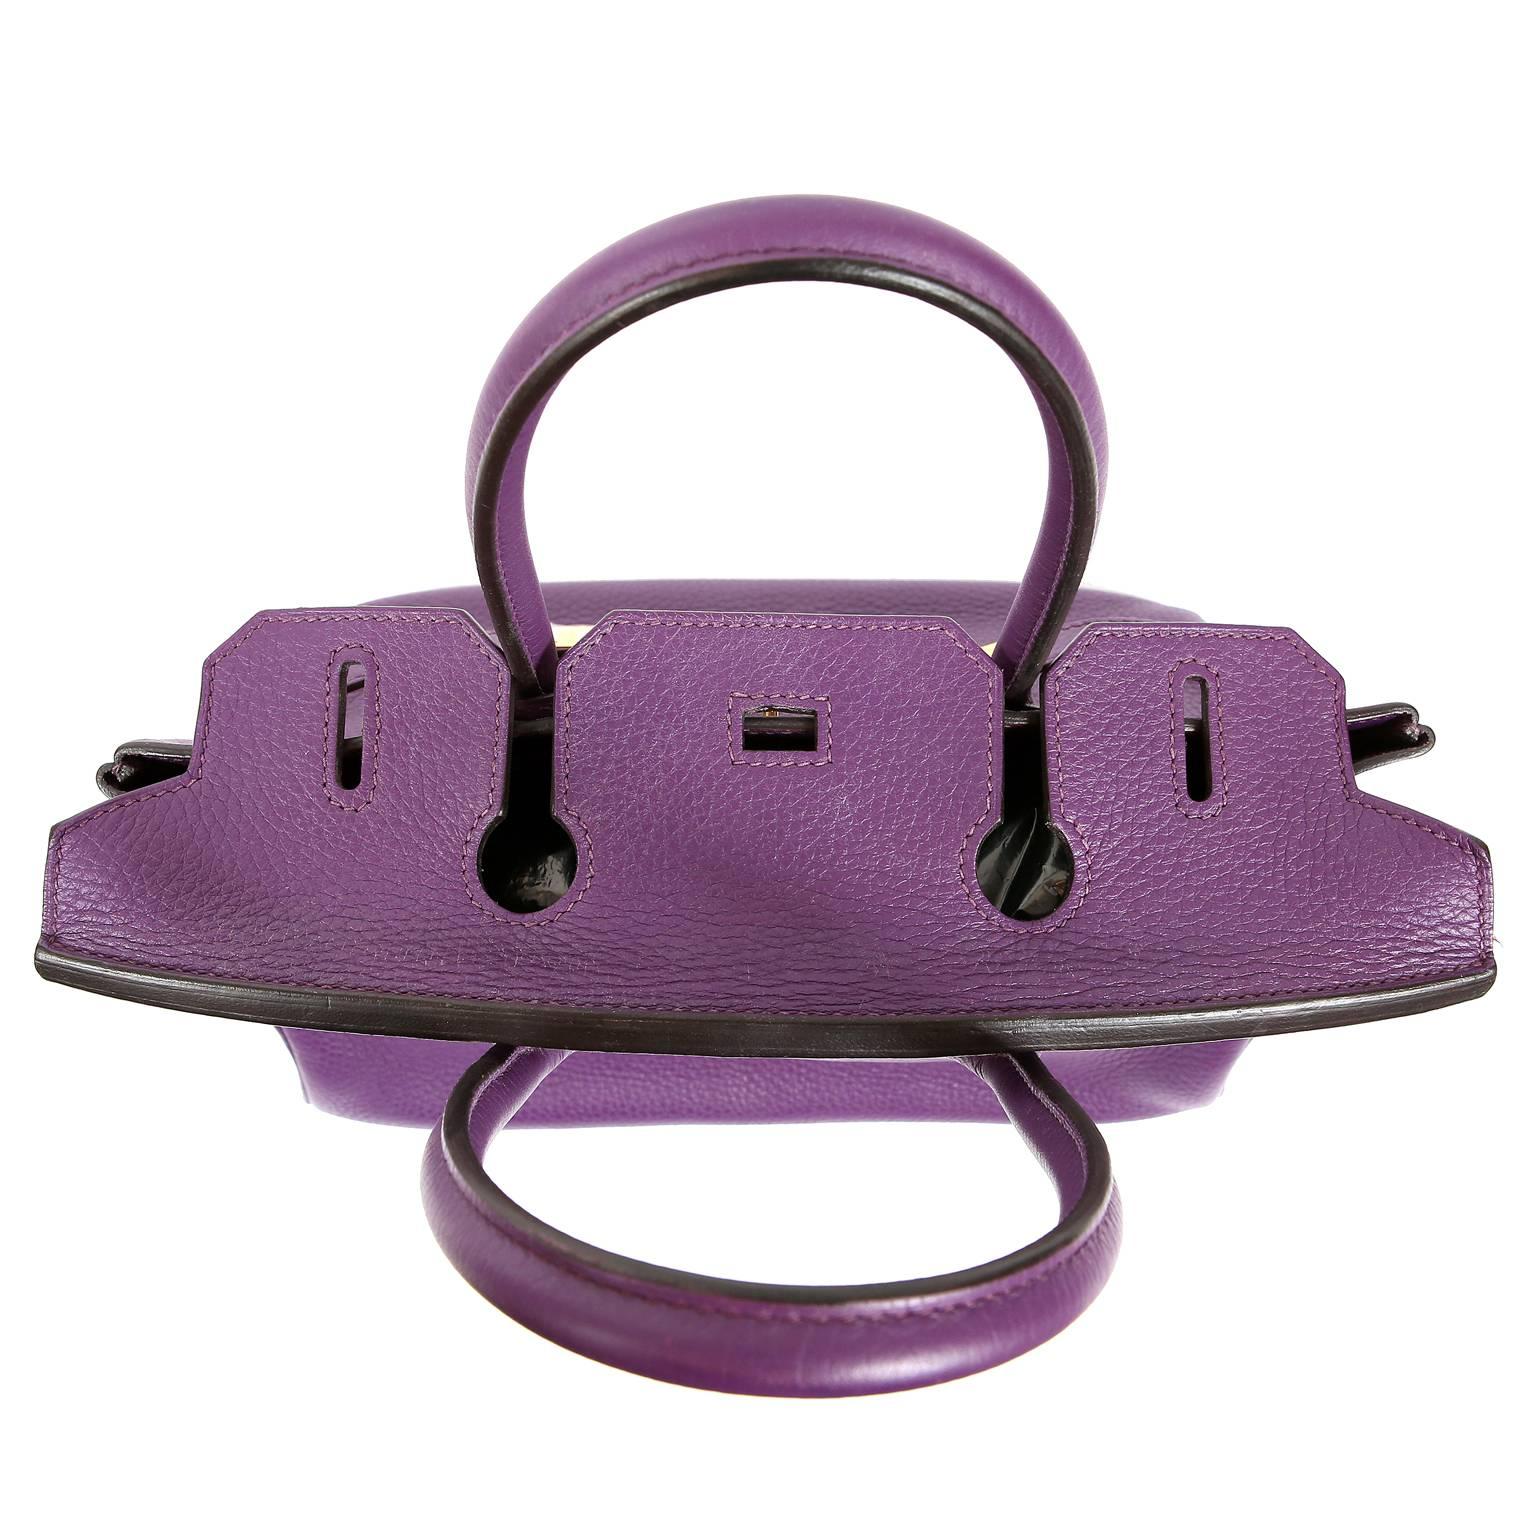 Hermes Ultra Violet Togo 30 cm Birkin Bag with GHW For Sale 3